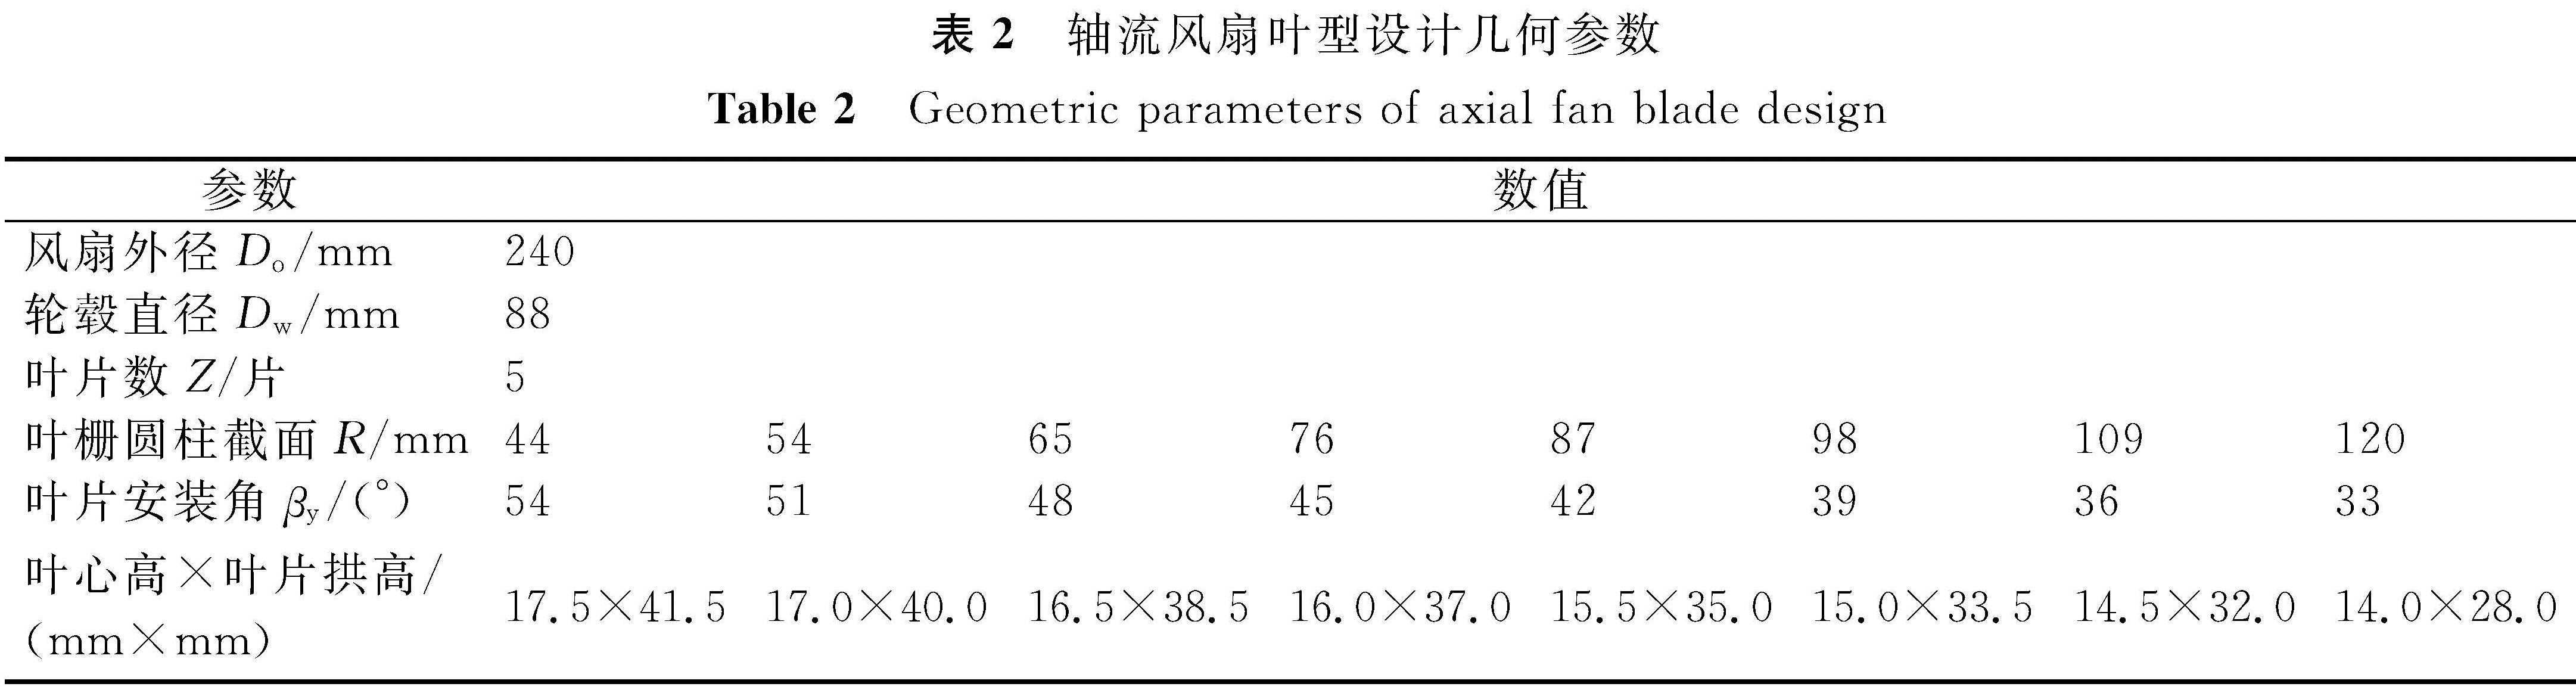 表2 轴流风扇叶型设计几何参数<br/>Table 2 Geometric parameters of axial fan blade design